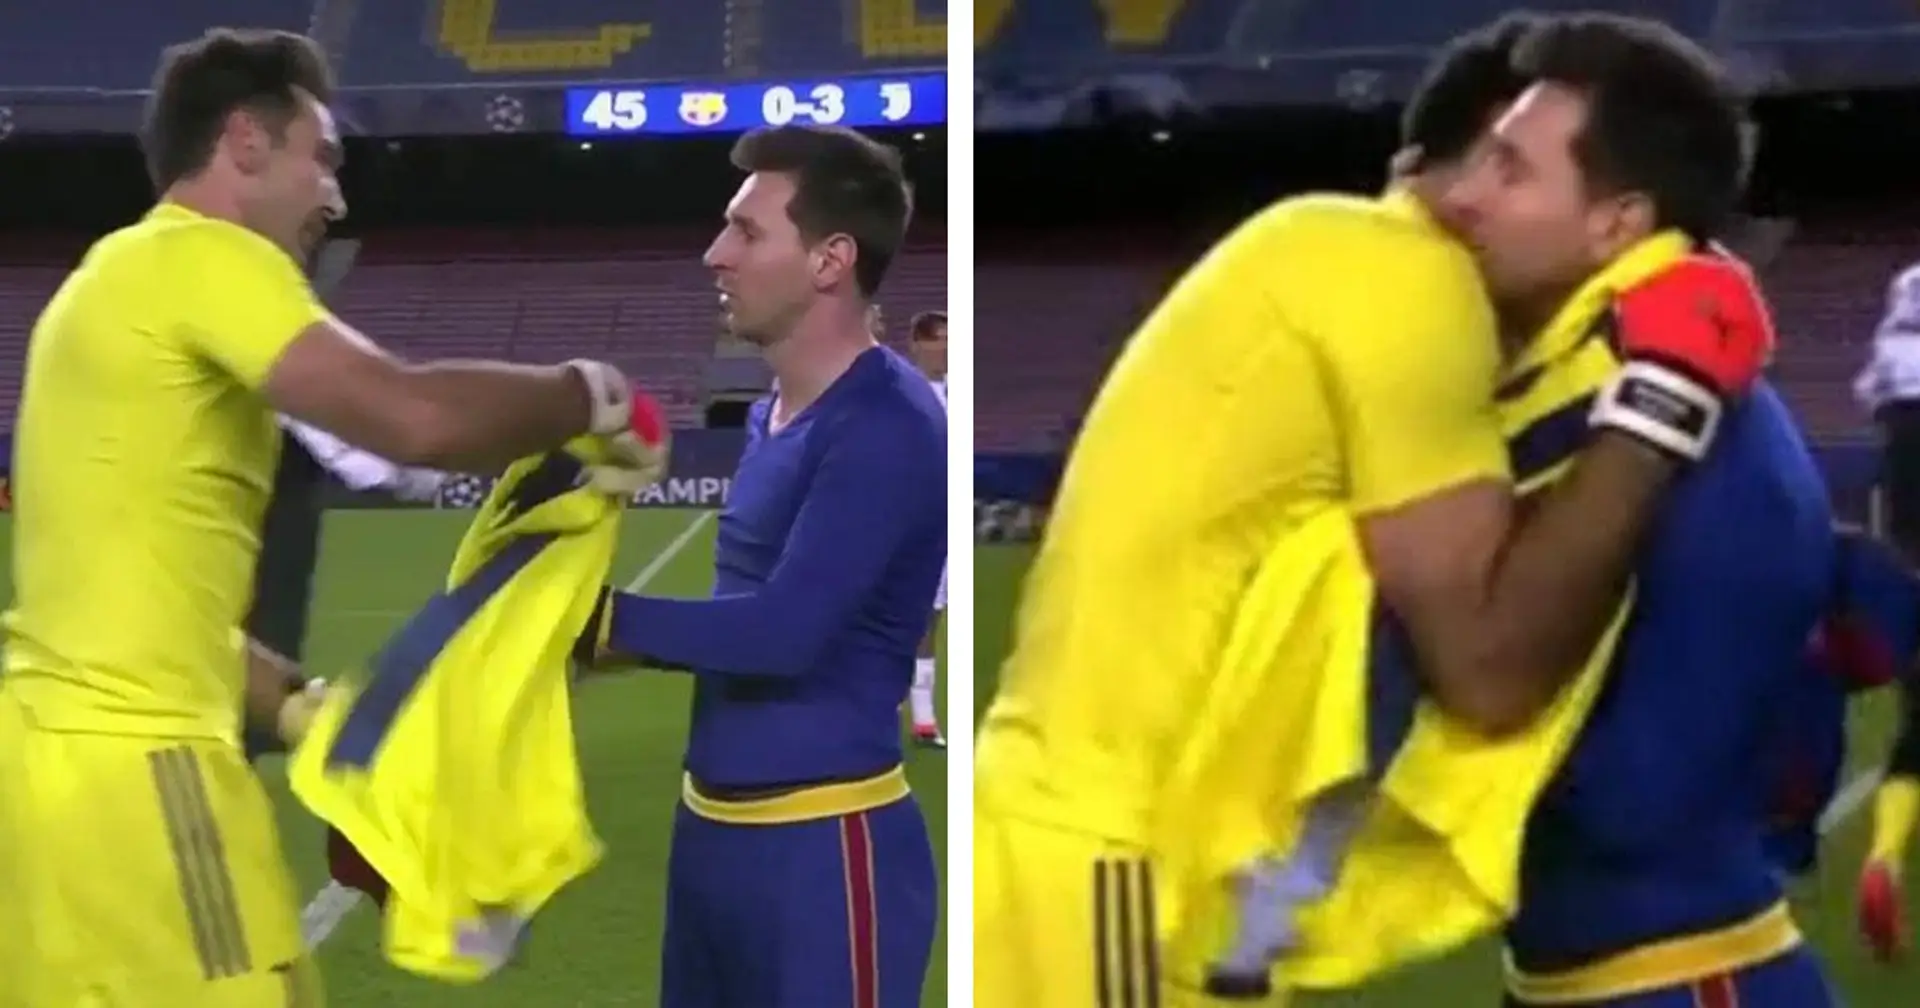 Amistad entre leyendas: Messi y Buffon intercambiaron camisetas tras el partido del Camp Nou